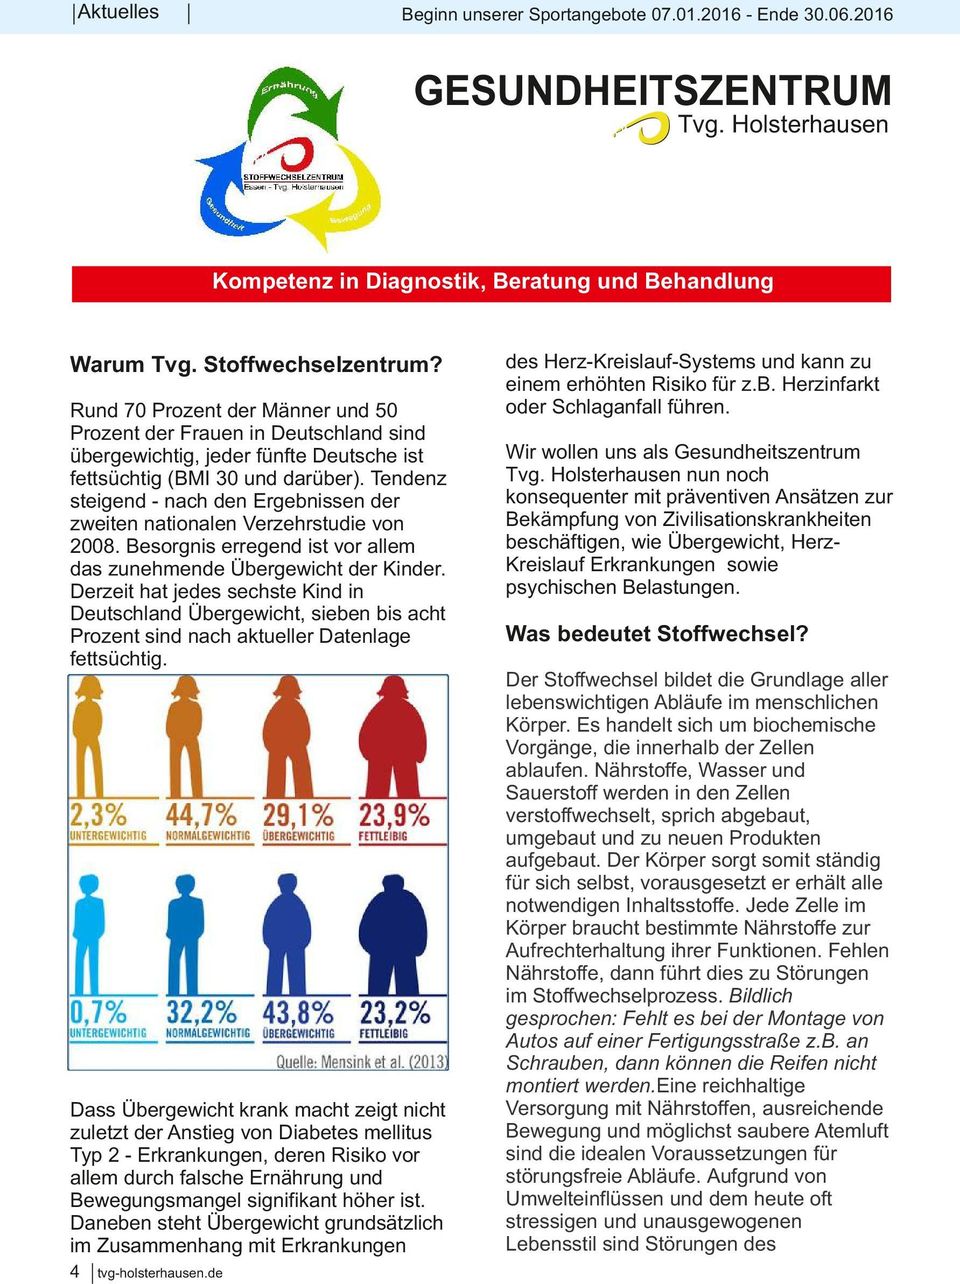 Rund 70 Prozent der Männer und 50 Prozent der Frauen in Deutschland sind übergewichtig, jeder fünfte Deutsche ist fettsüchtig (BMI 30 und darüber).